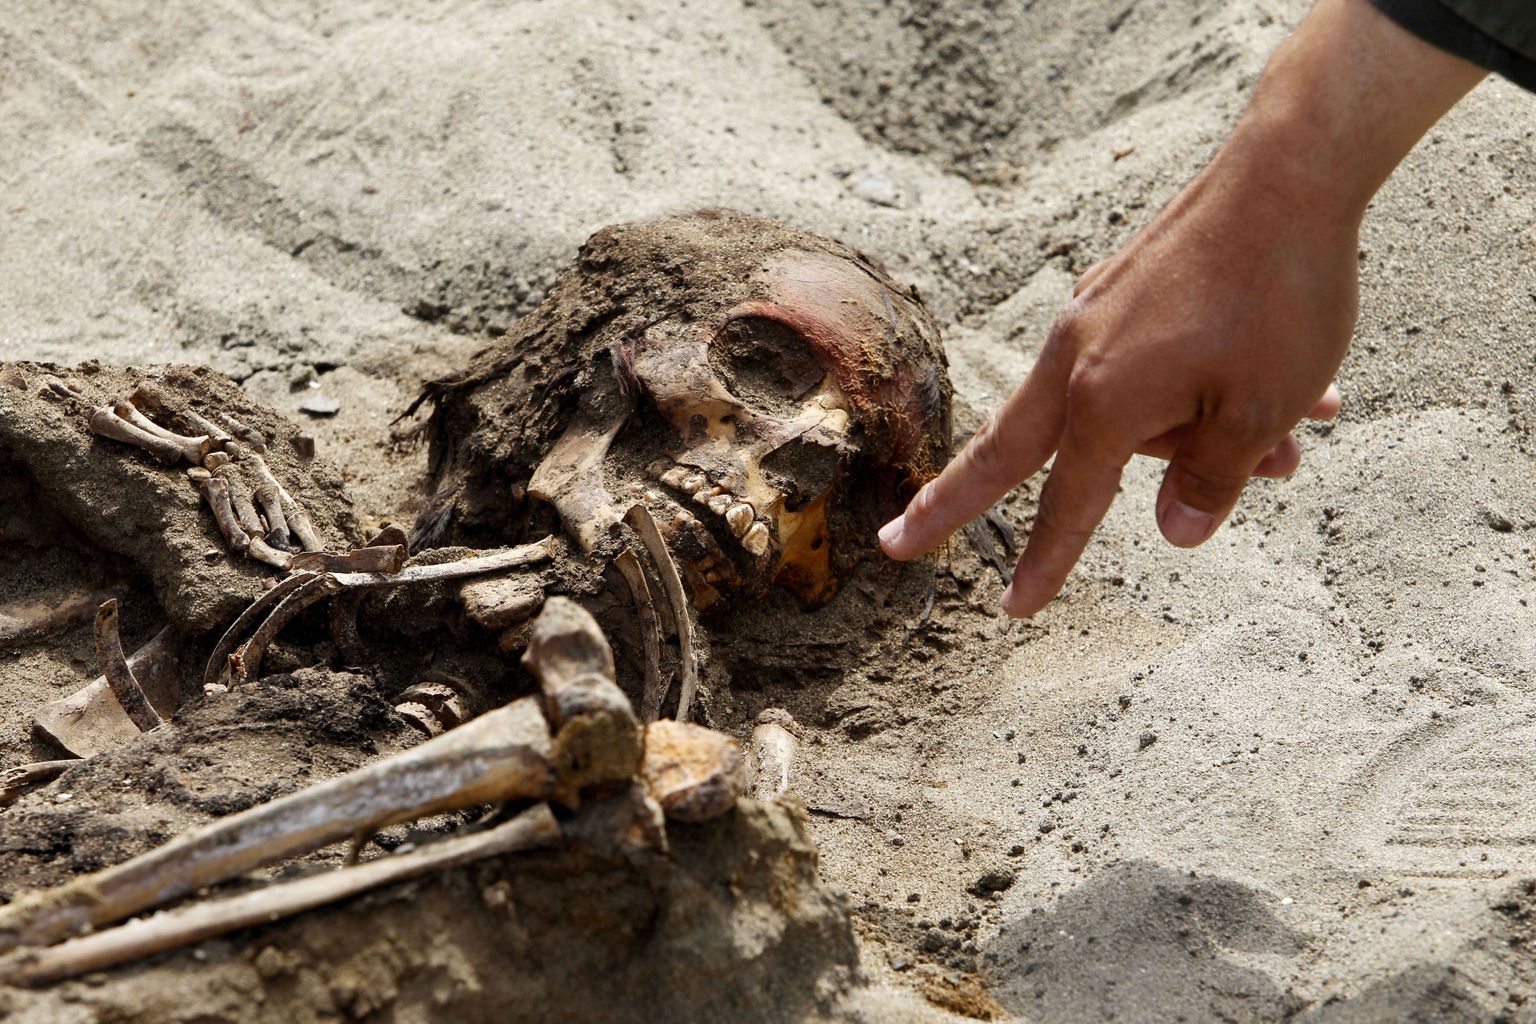 Peruust leiti ohvriks toodud laste ja laamade massihauad